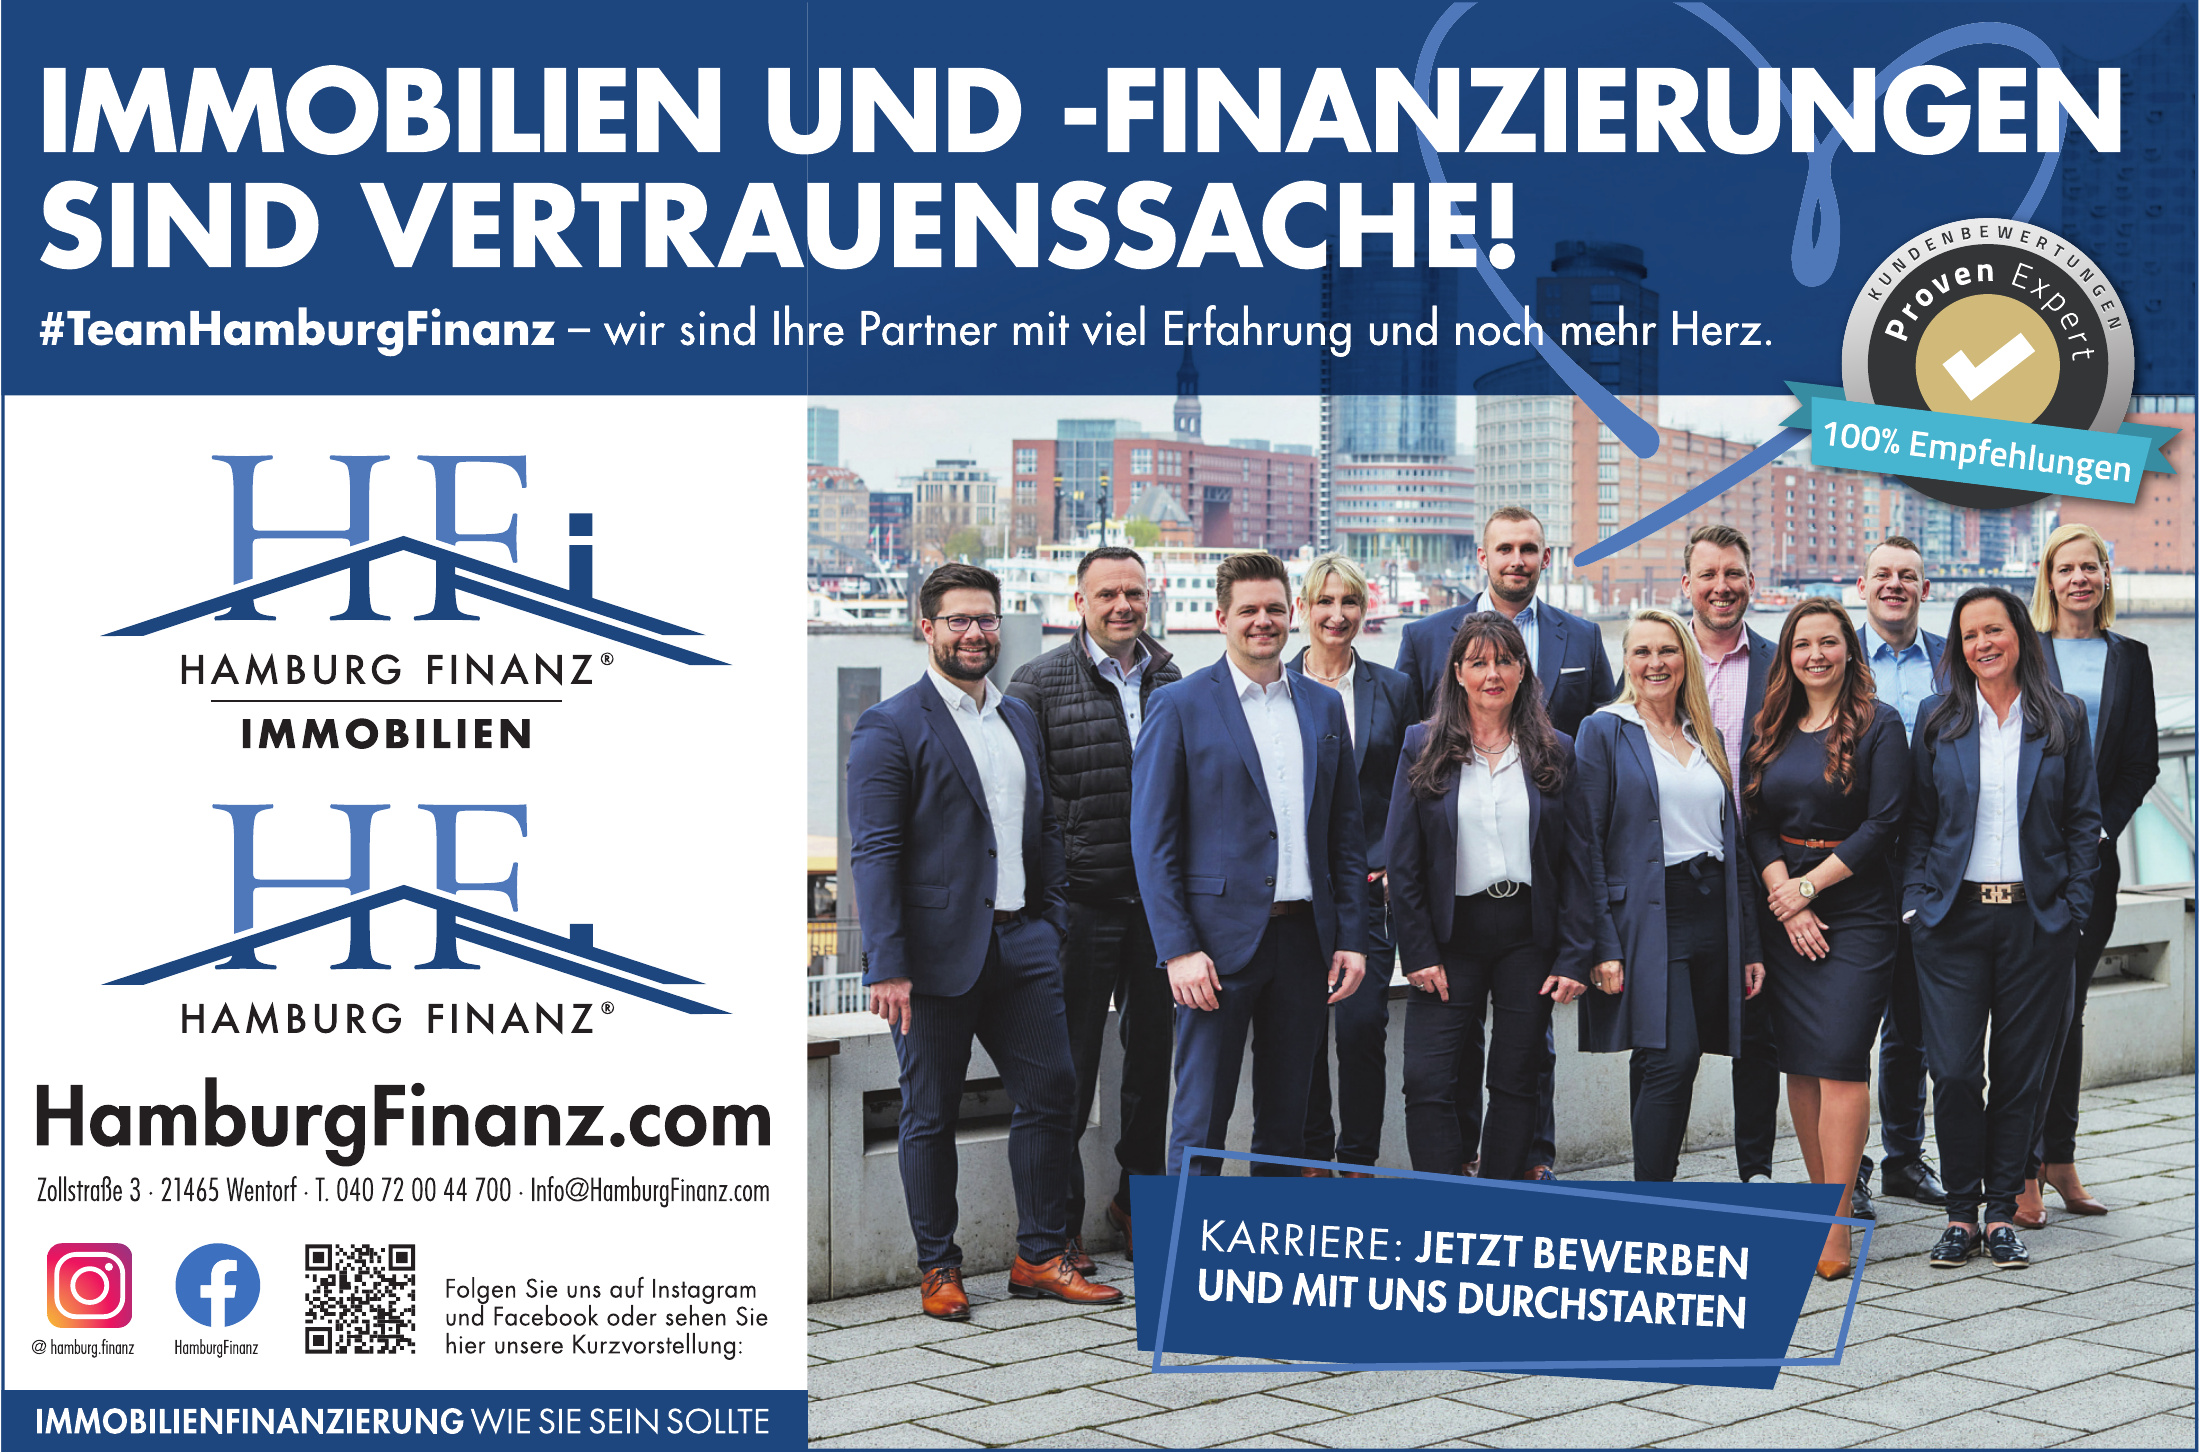 Hamburg Finanz